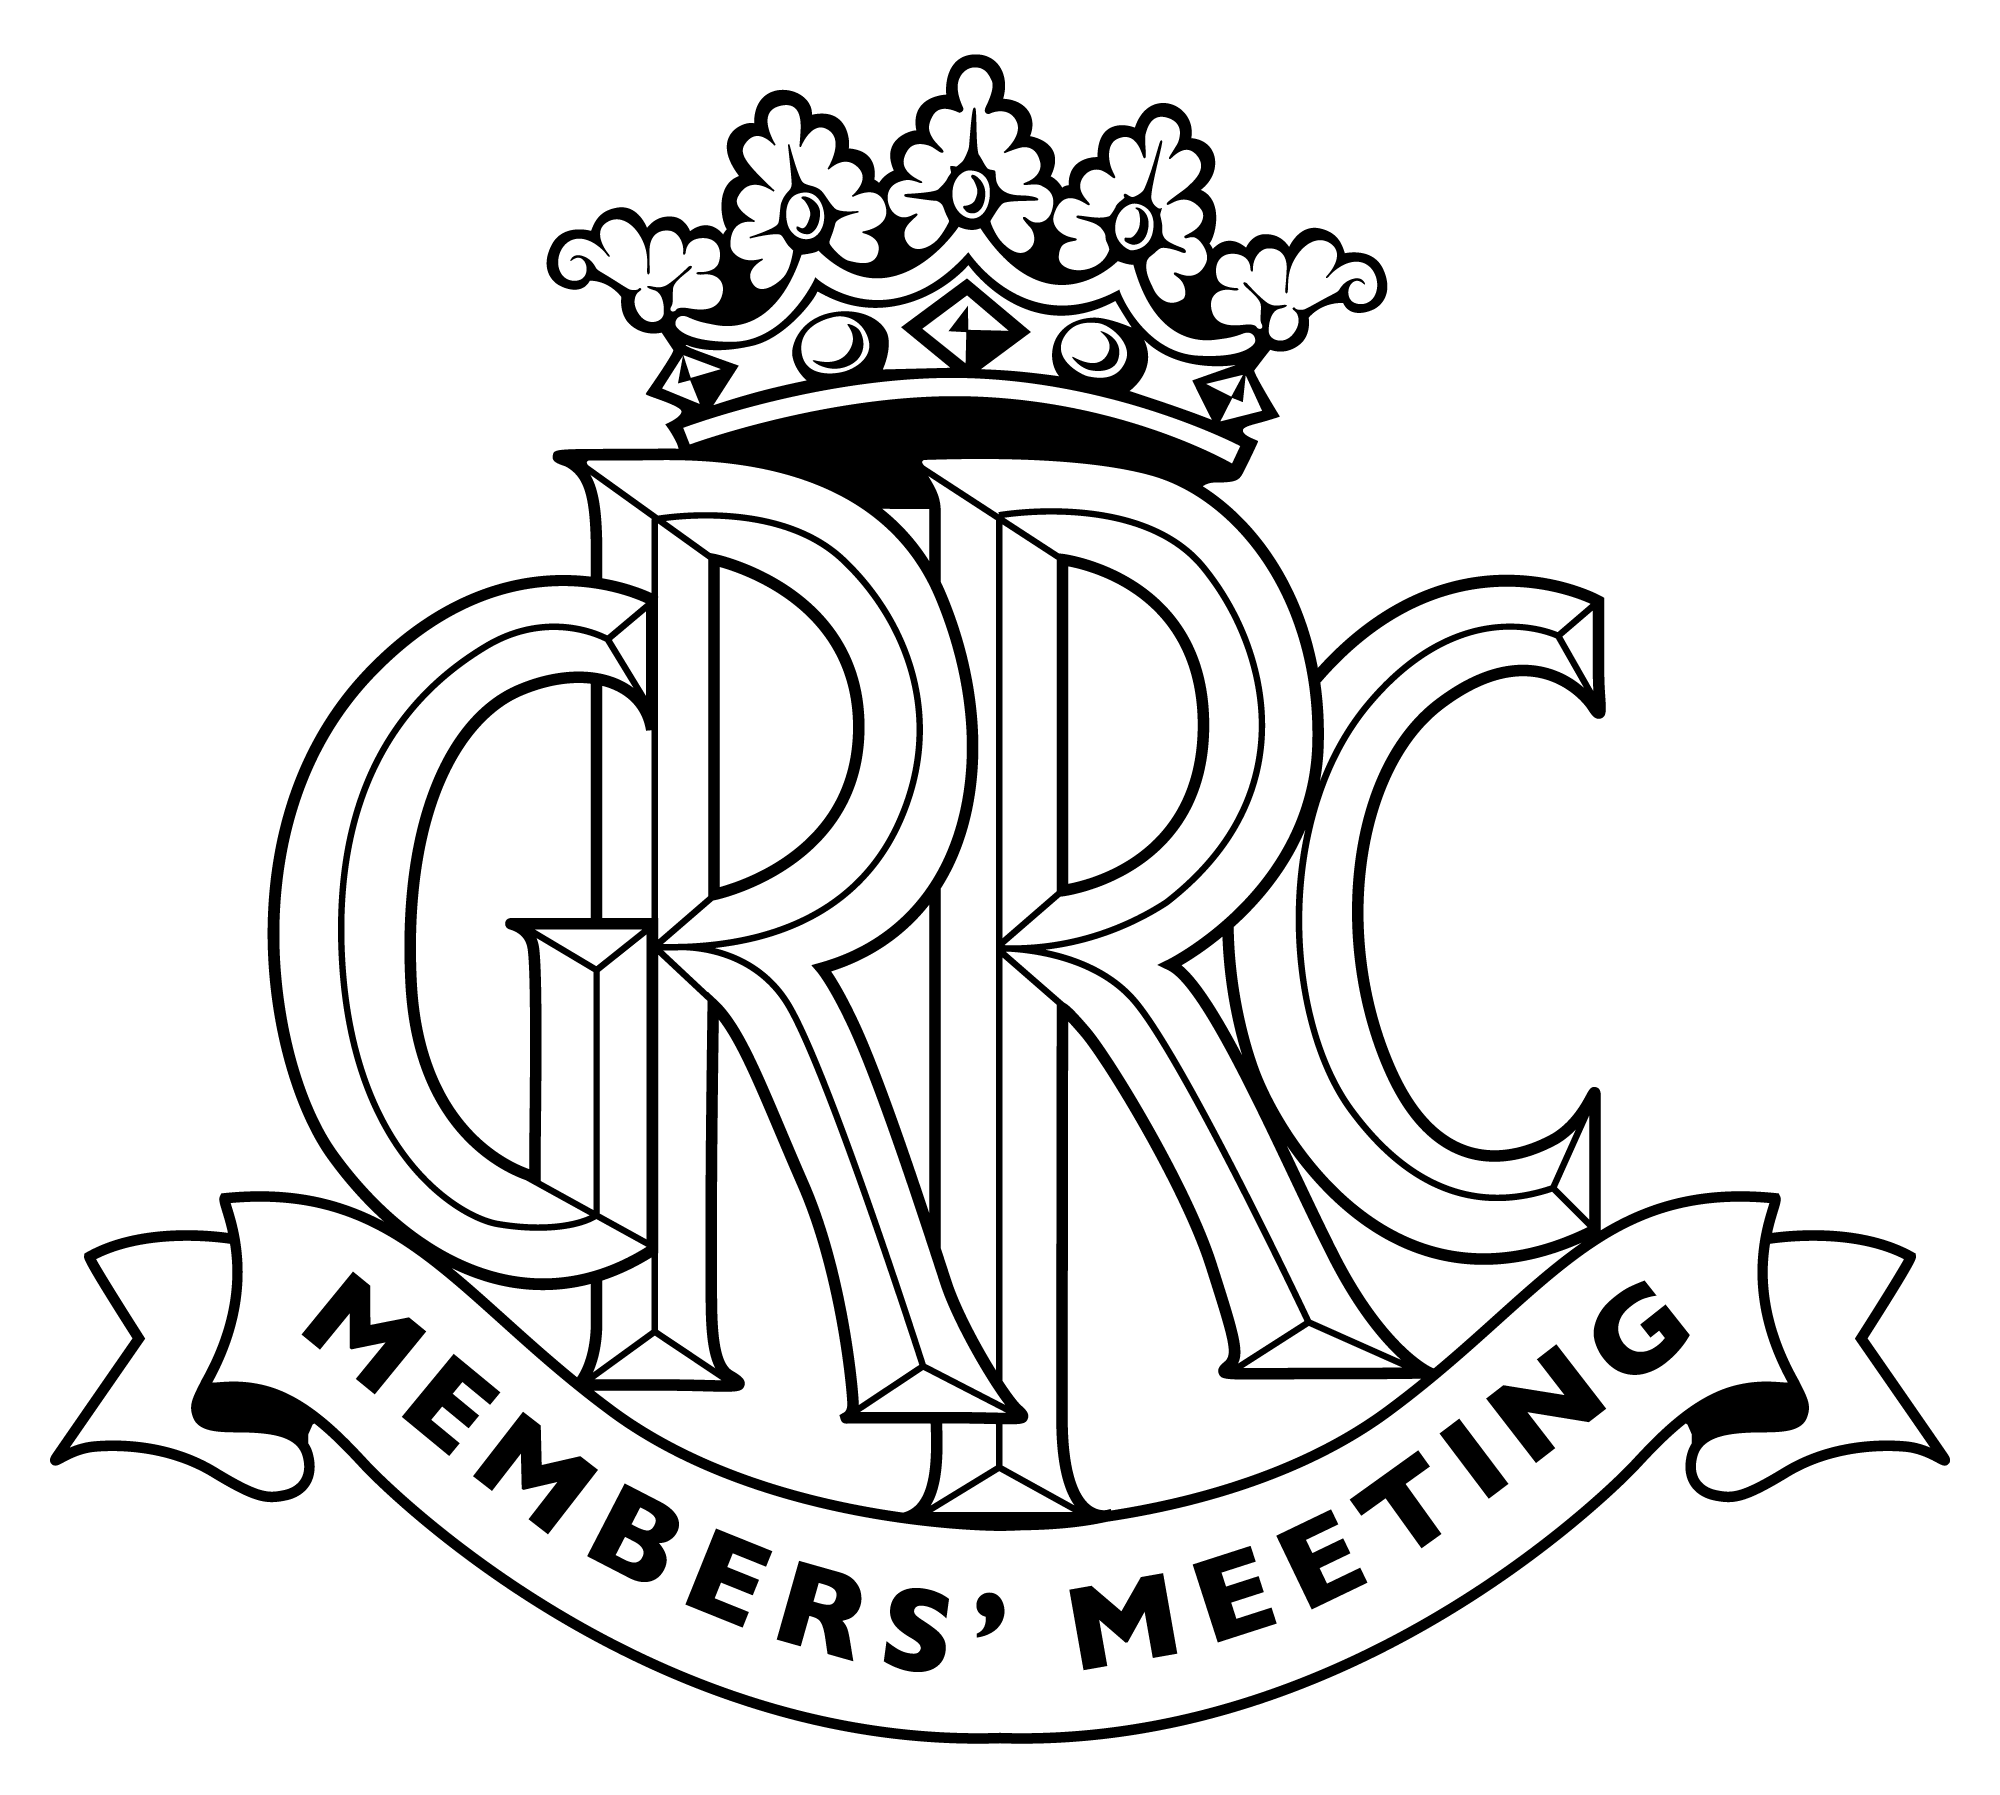 Members' Meeting